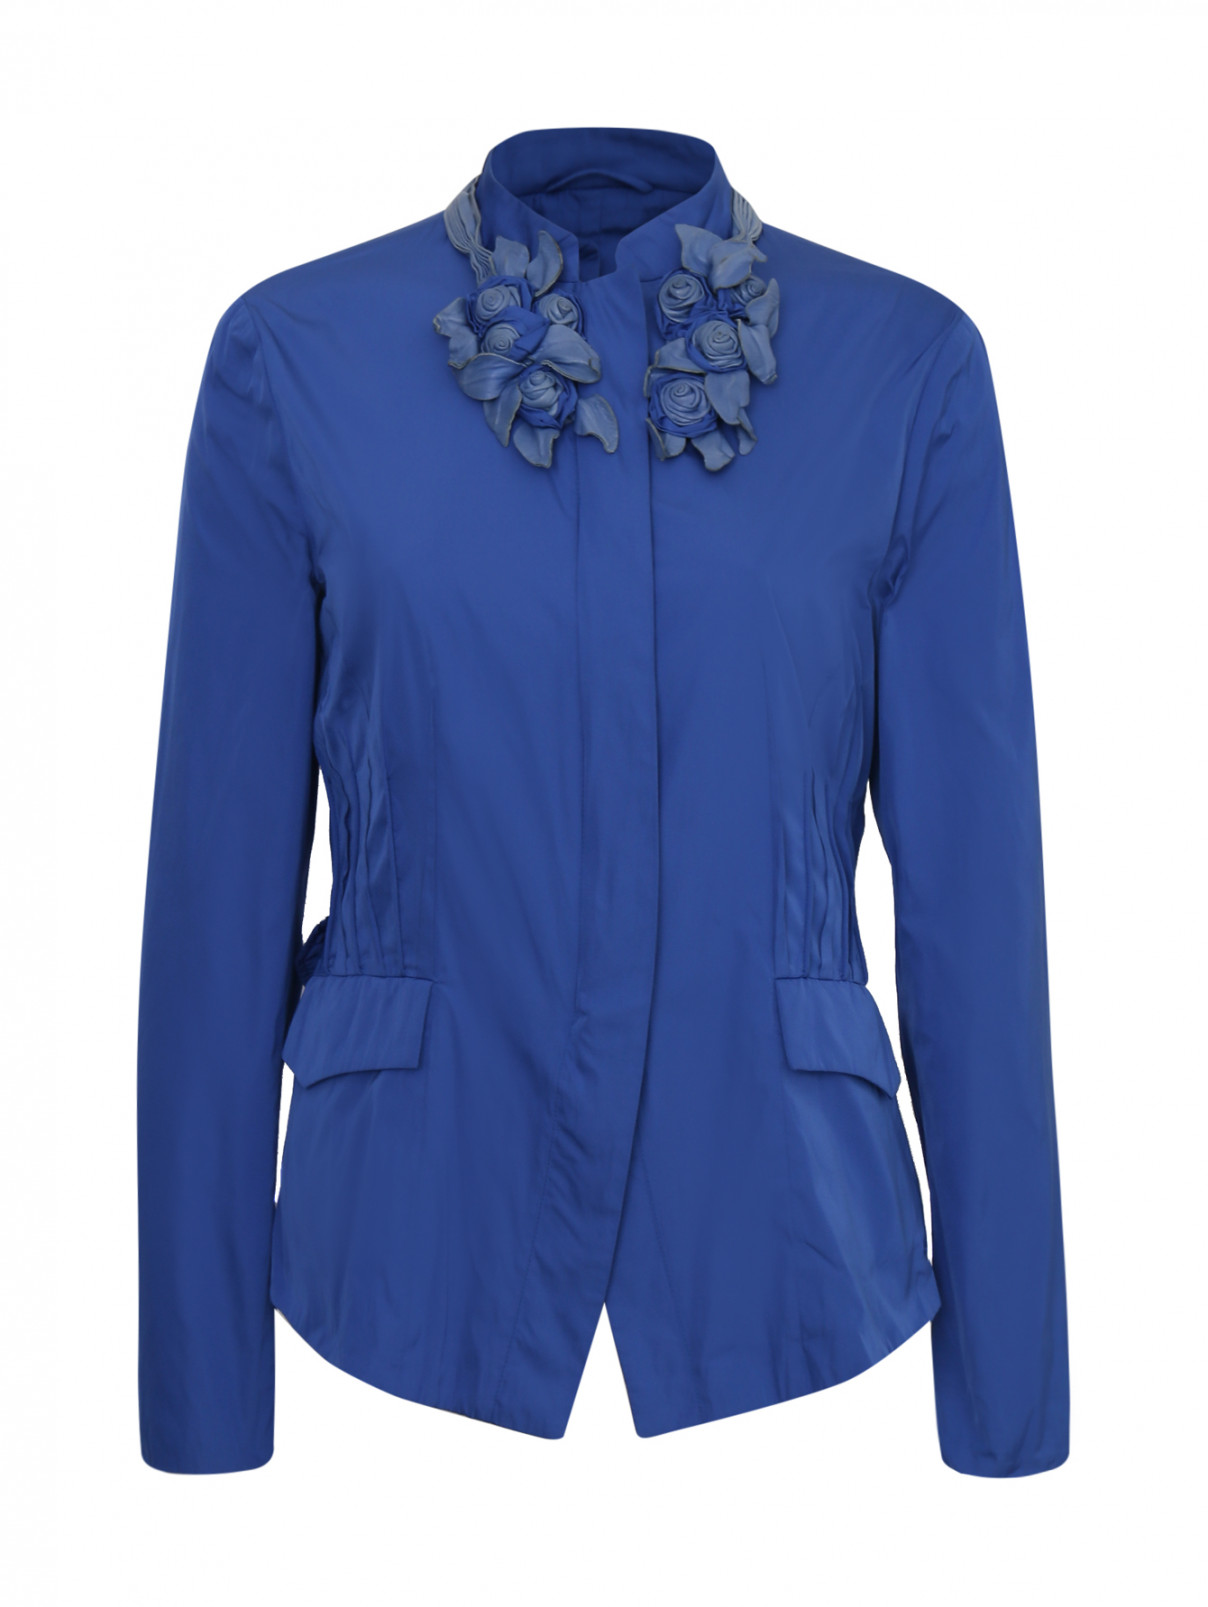 Куртка на молнии с аппликацией Ermanno Scervino  –  Общий вид  – Цвет:  Синий